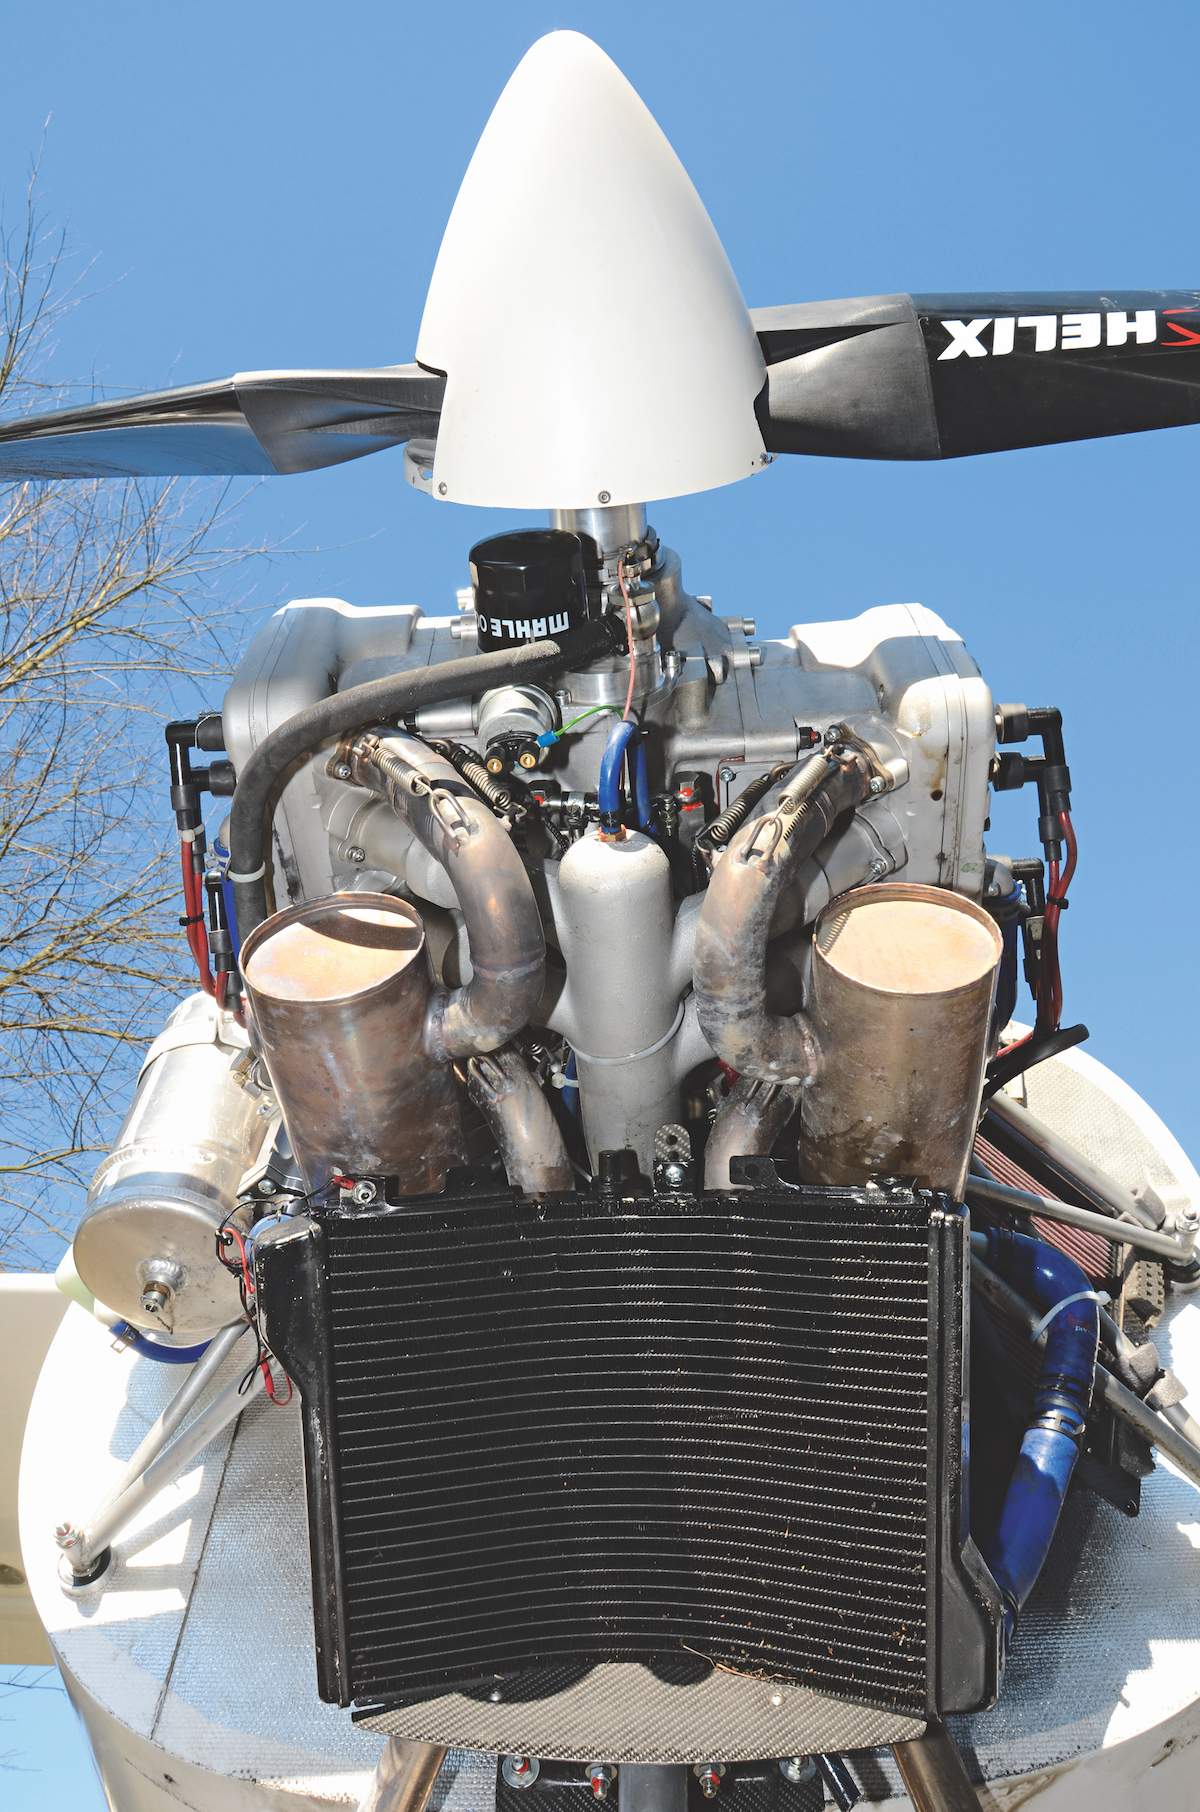 Hubkolbenmotor für Flugzeugmotoren, Triebwerksteile, Flugzeug